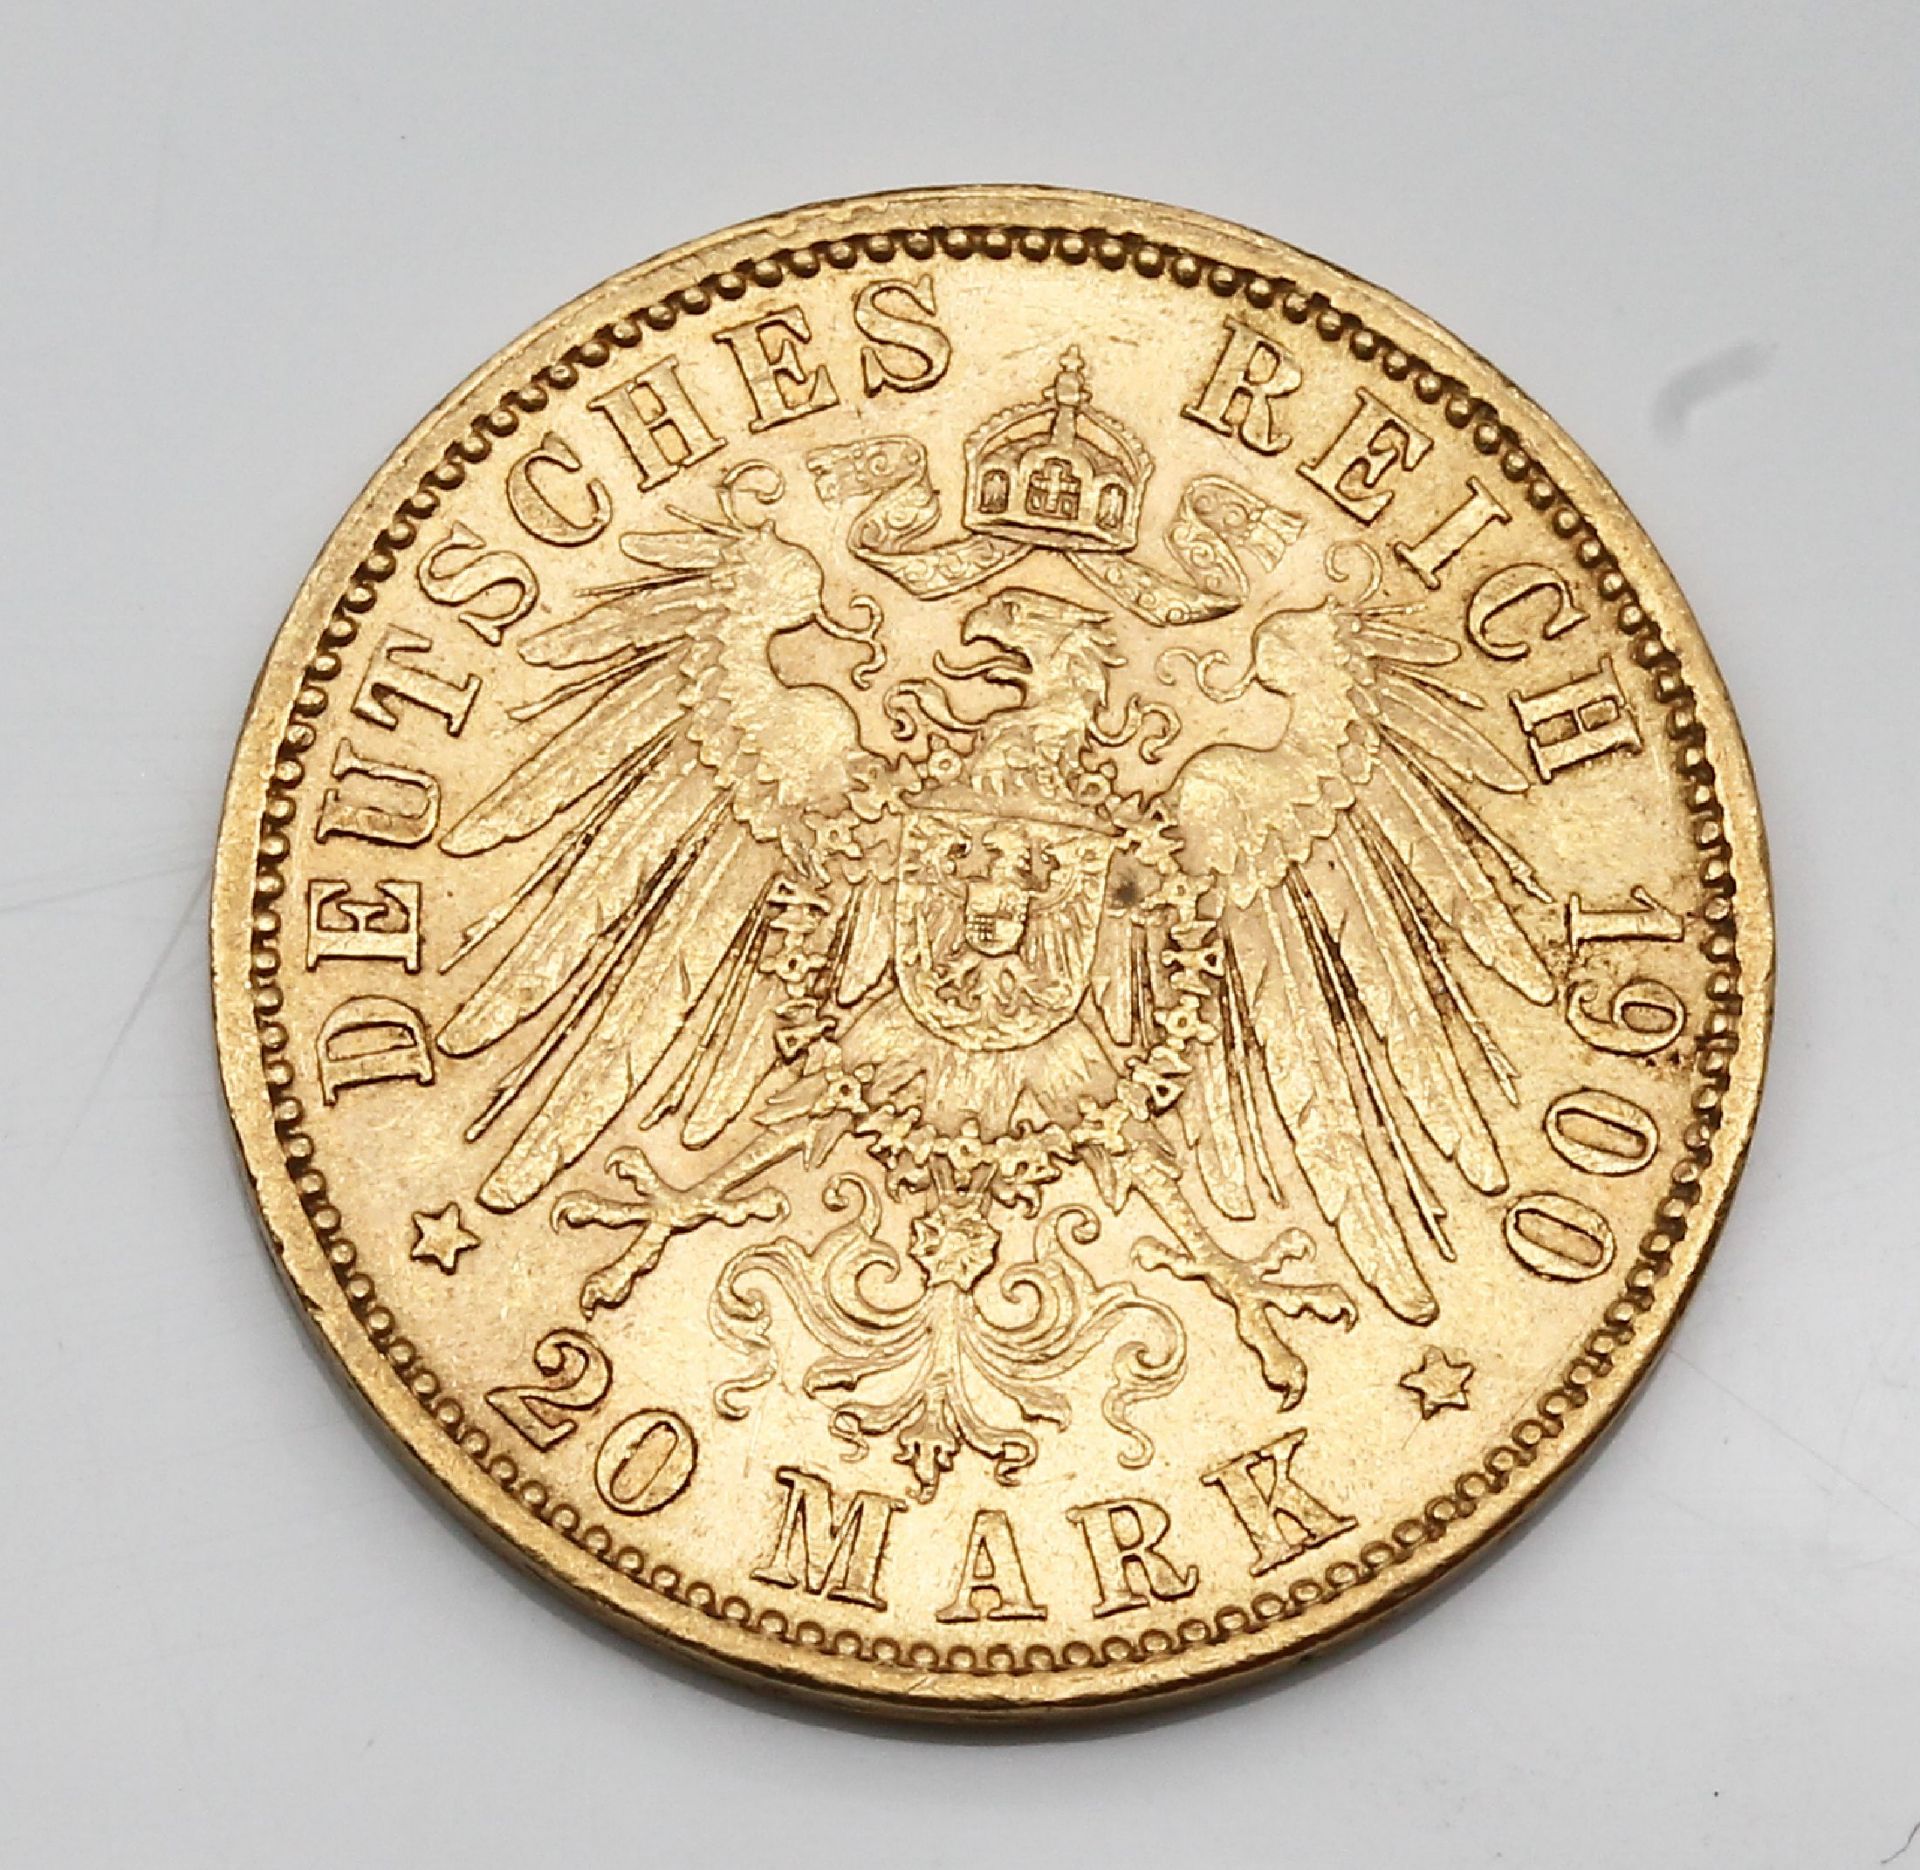 20 Mark Goldmünze 1900, Deutsches Reich, Otto König v. - Image 3 of 3